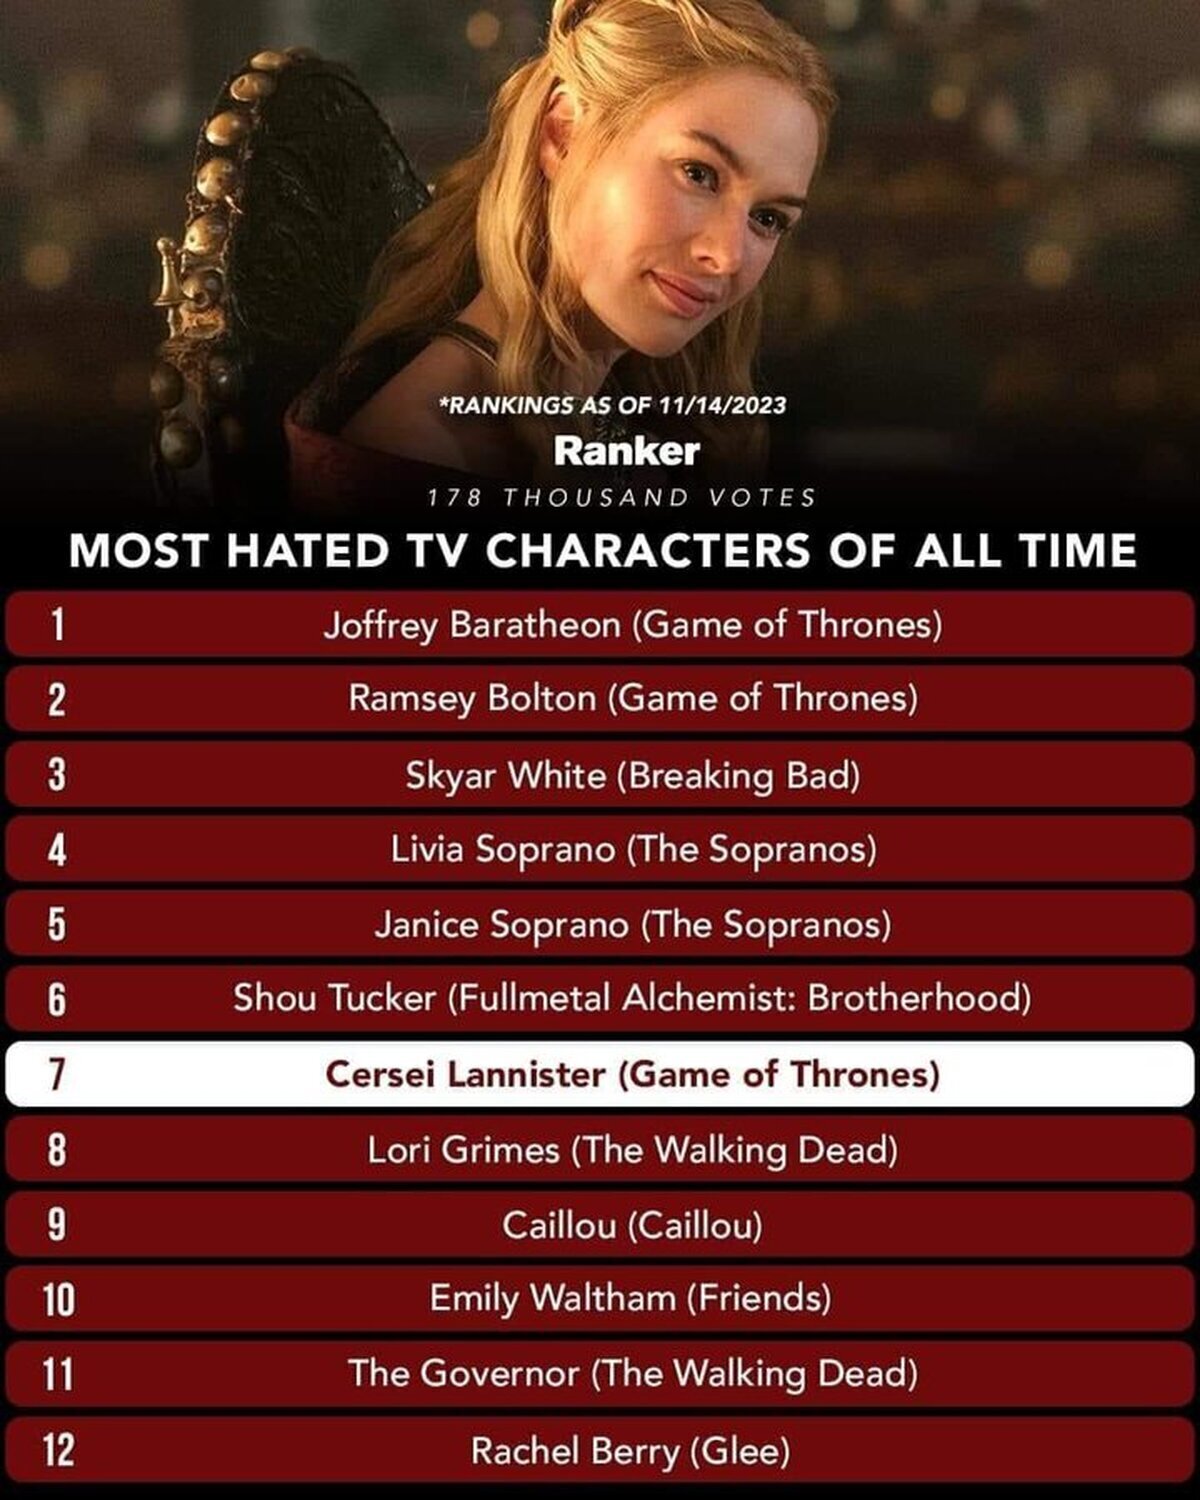 Según este reciente ranking, nuestro Joffrey Baratheon es el personaje más odiado de la historia de la televisión, seguido de Ramsey Bolton, y Cersei Lannister que ocupa el séptimo puesto